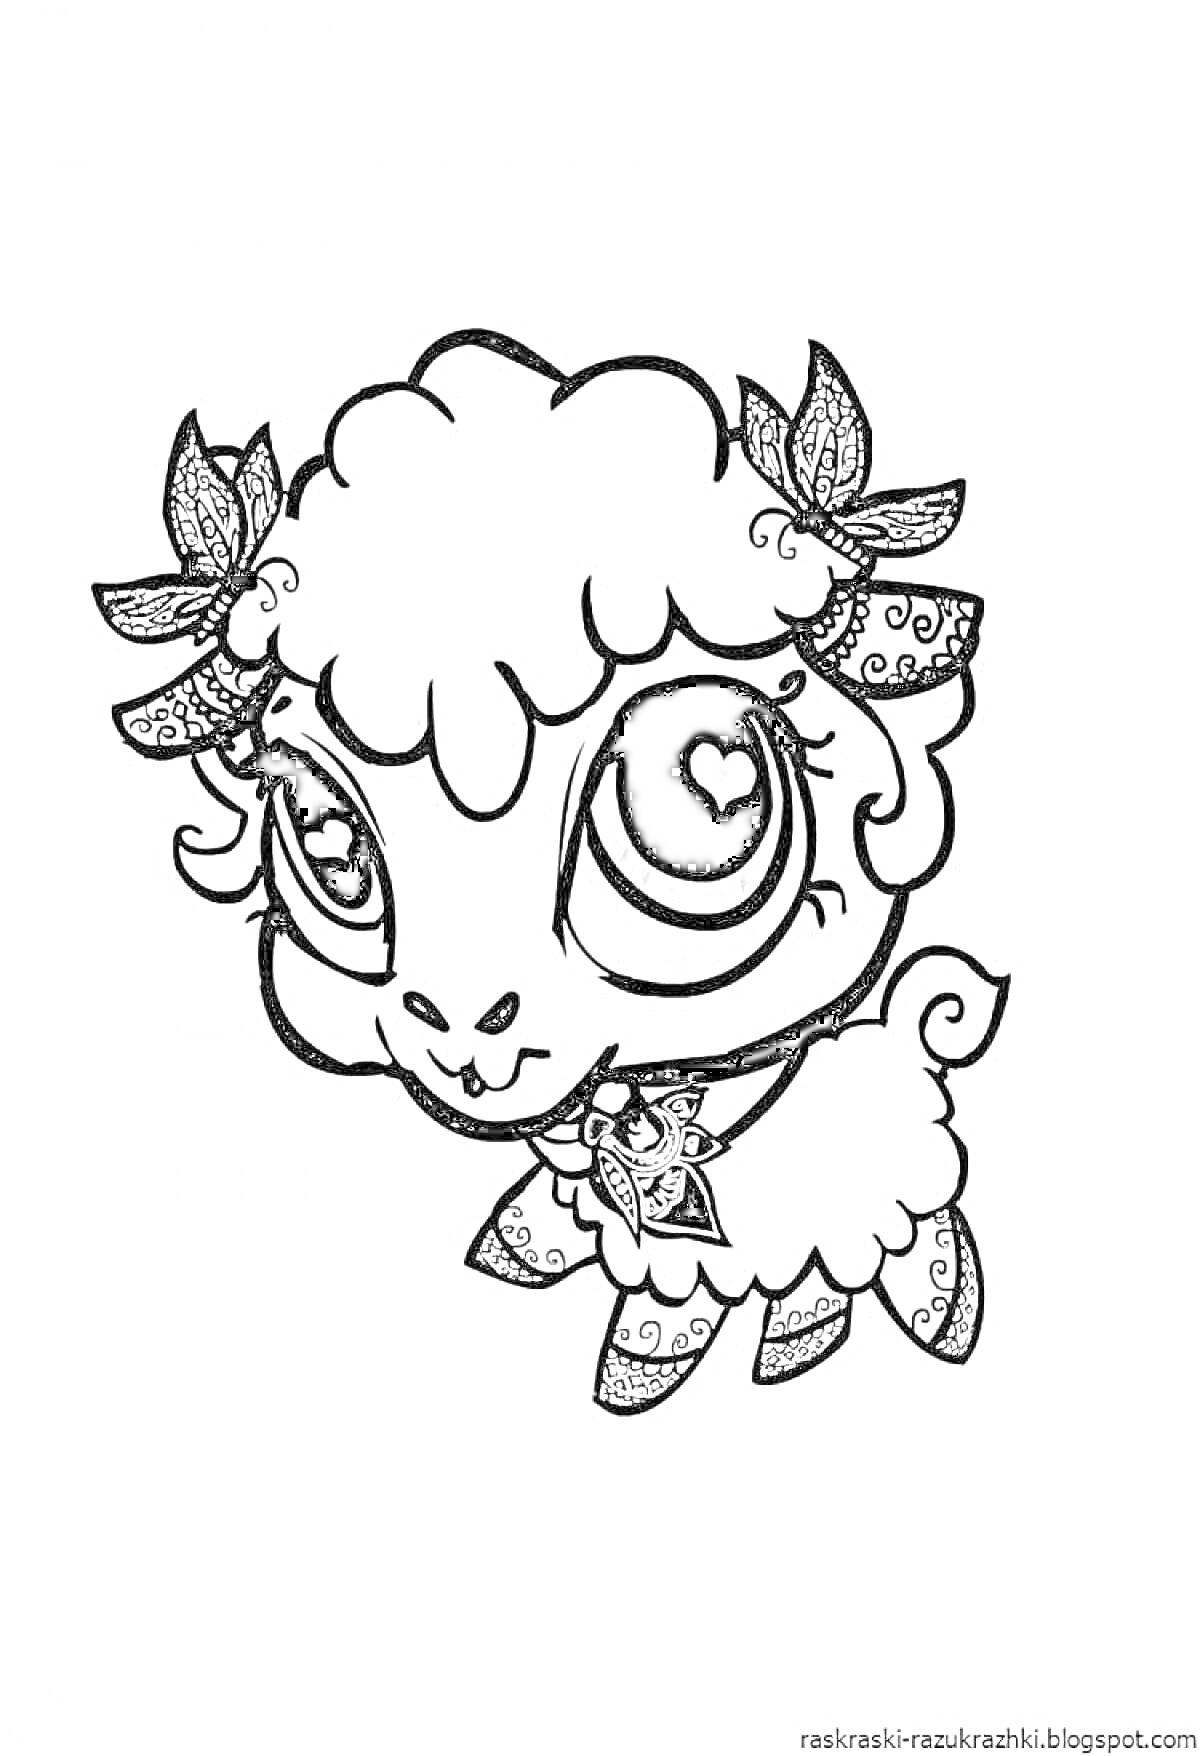 Раскраска Милая овечка с большими глазами и бантиками в шерсти